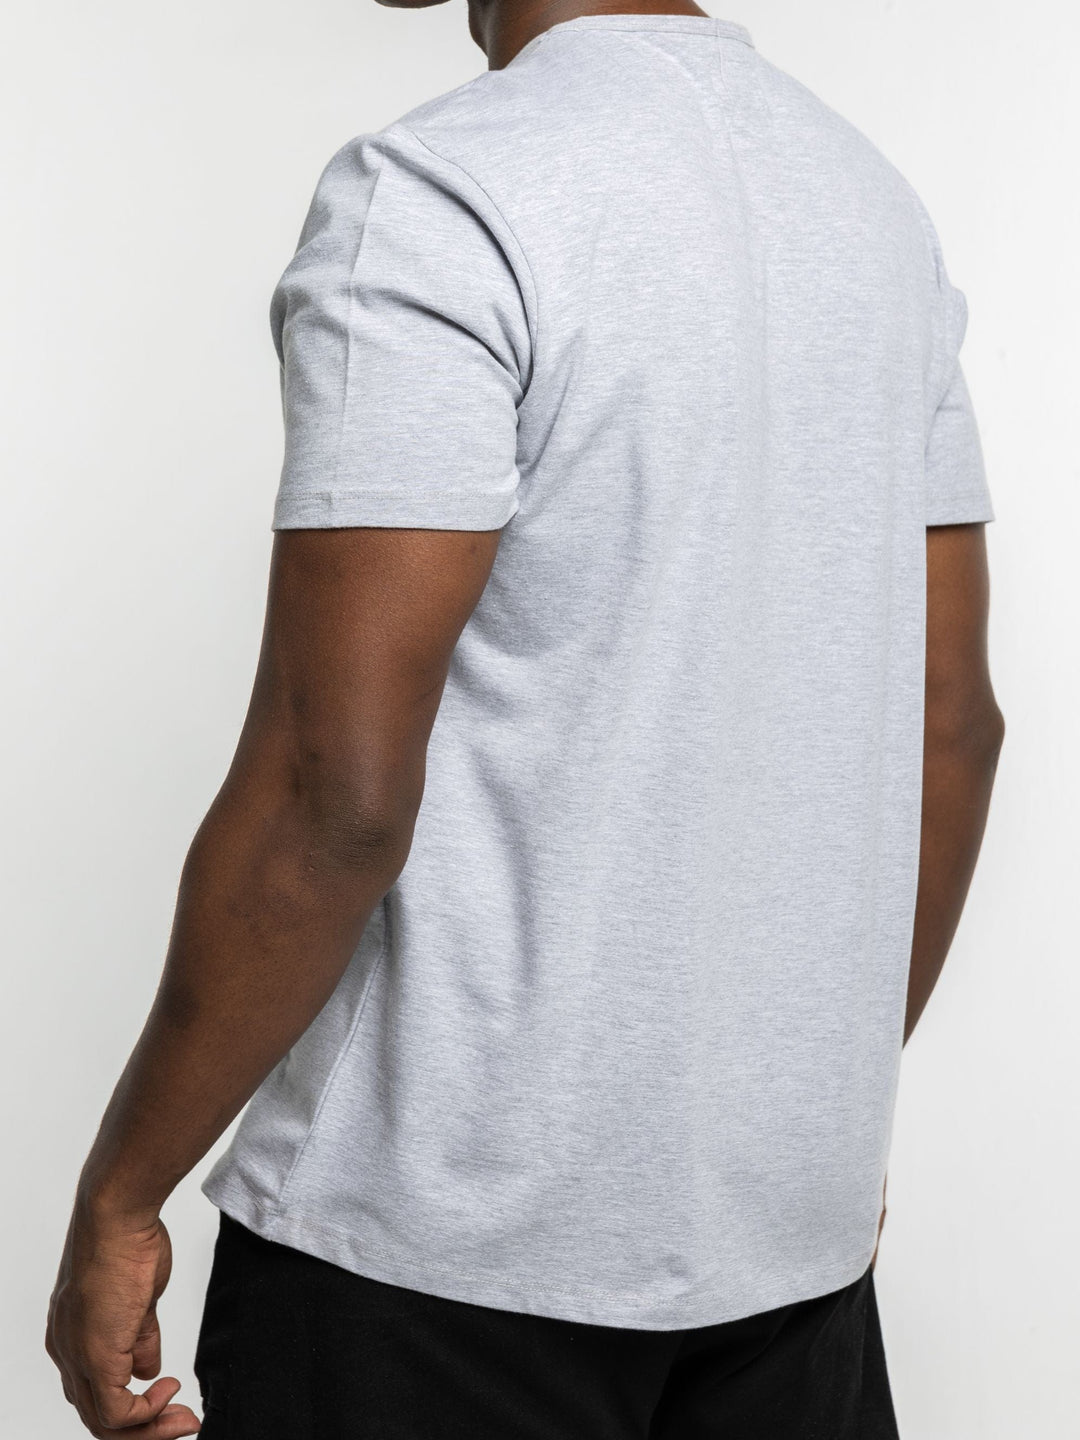 Zhivago x Nuuk Men T-shirt Grey Straight Hem T-Shirt: SLS Comfort